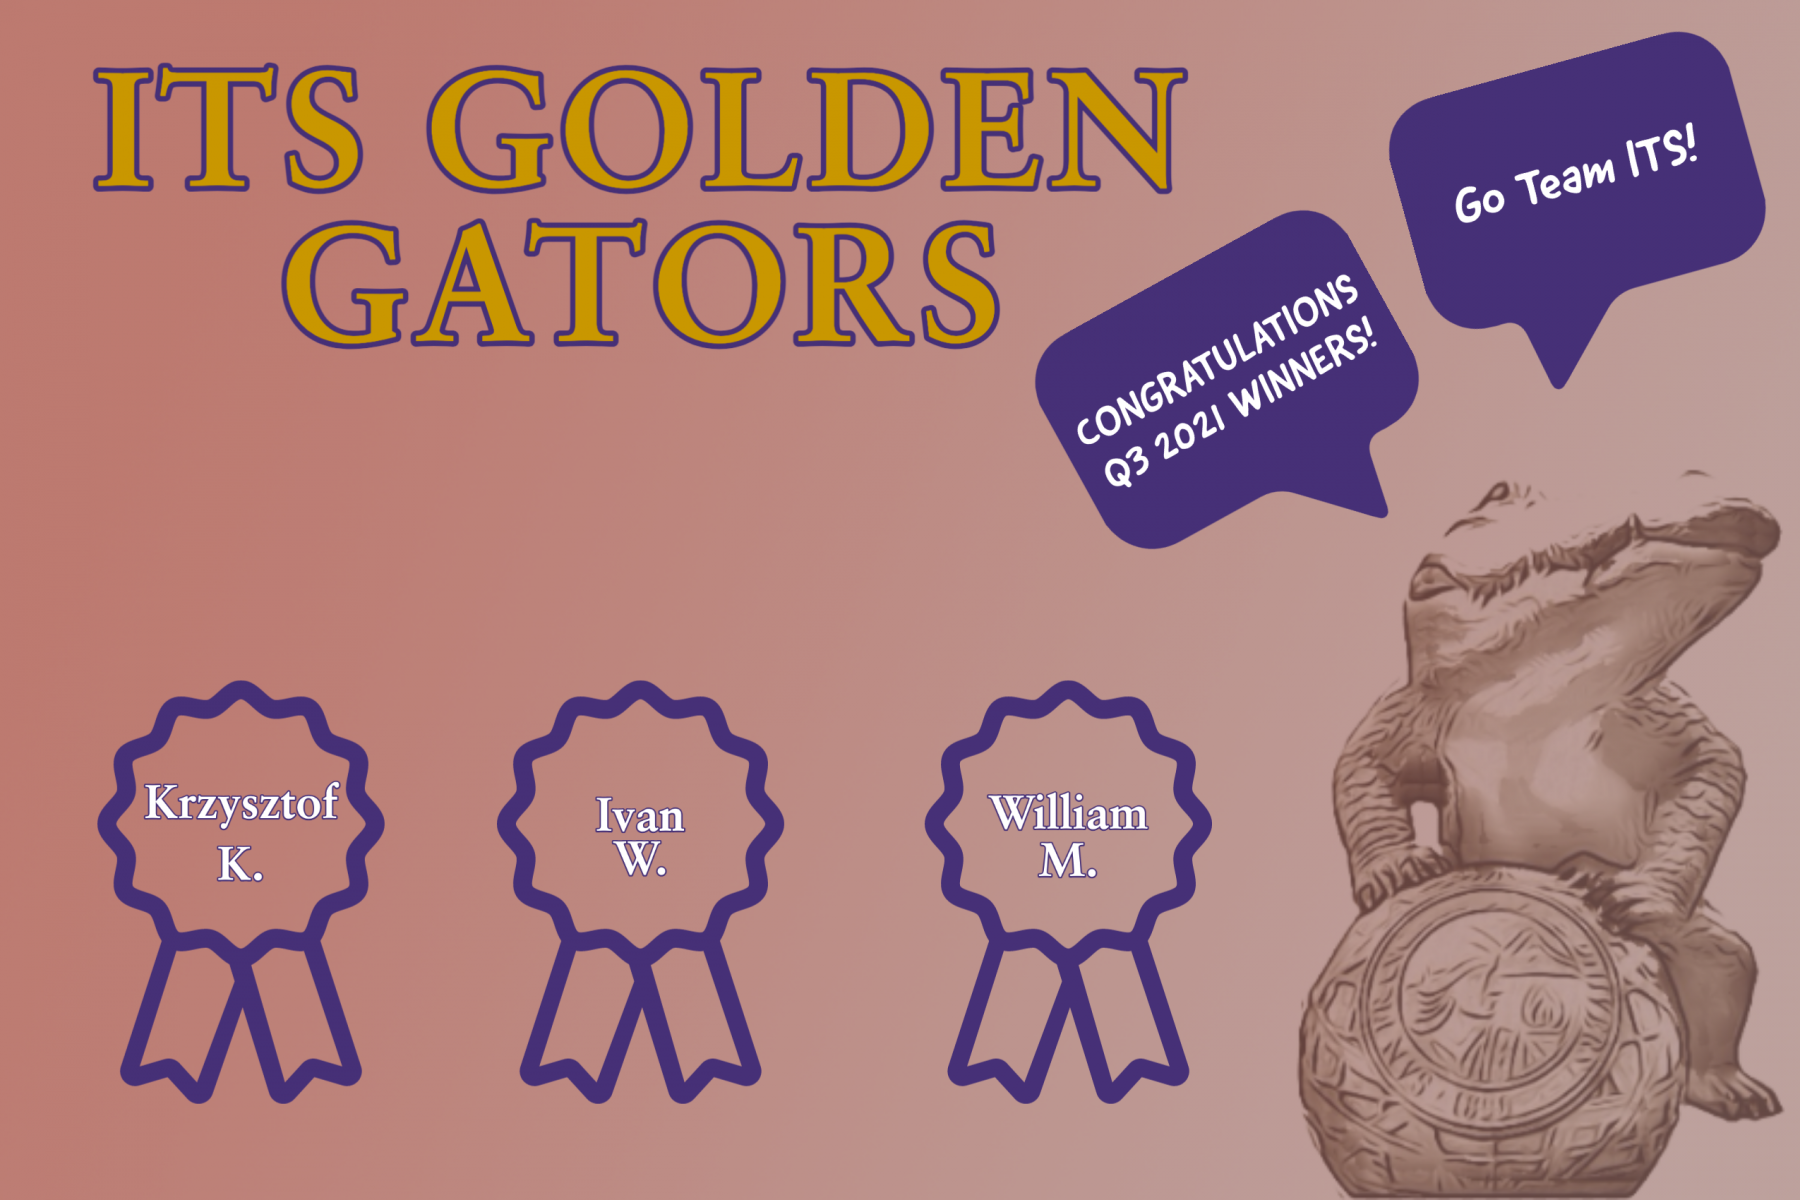 Golder Gator winners for Q3 Krzysztof, Ivan, William